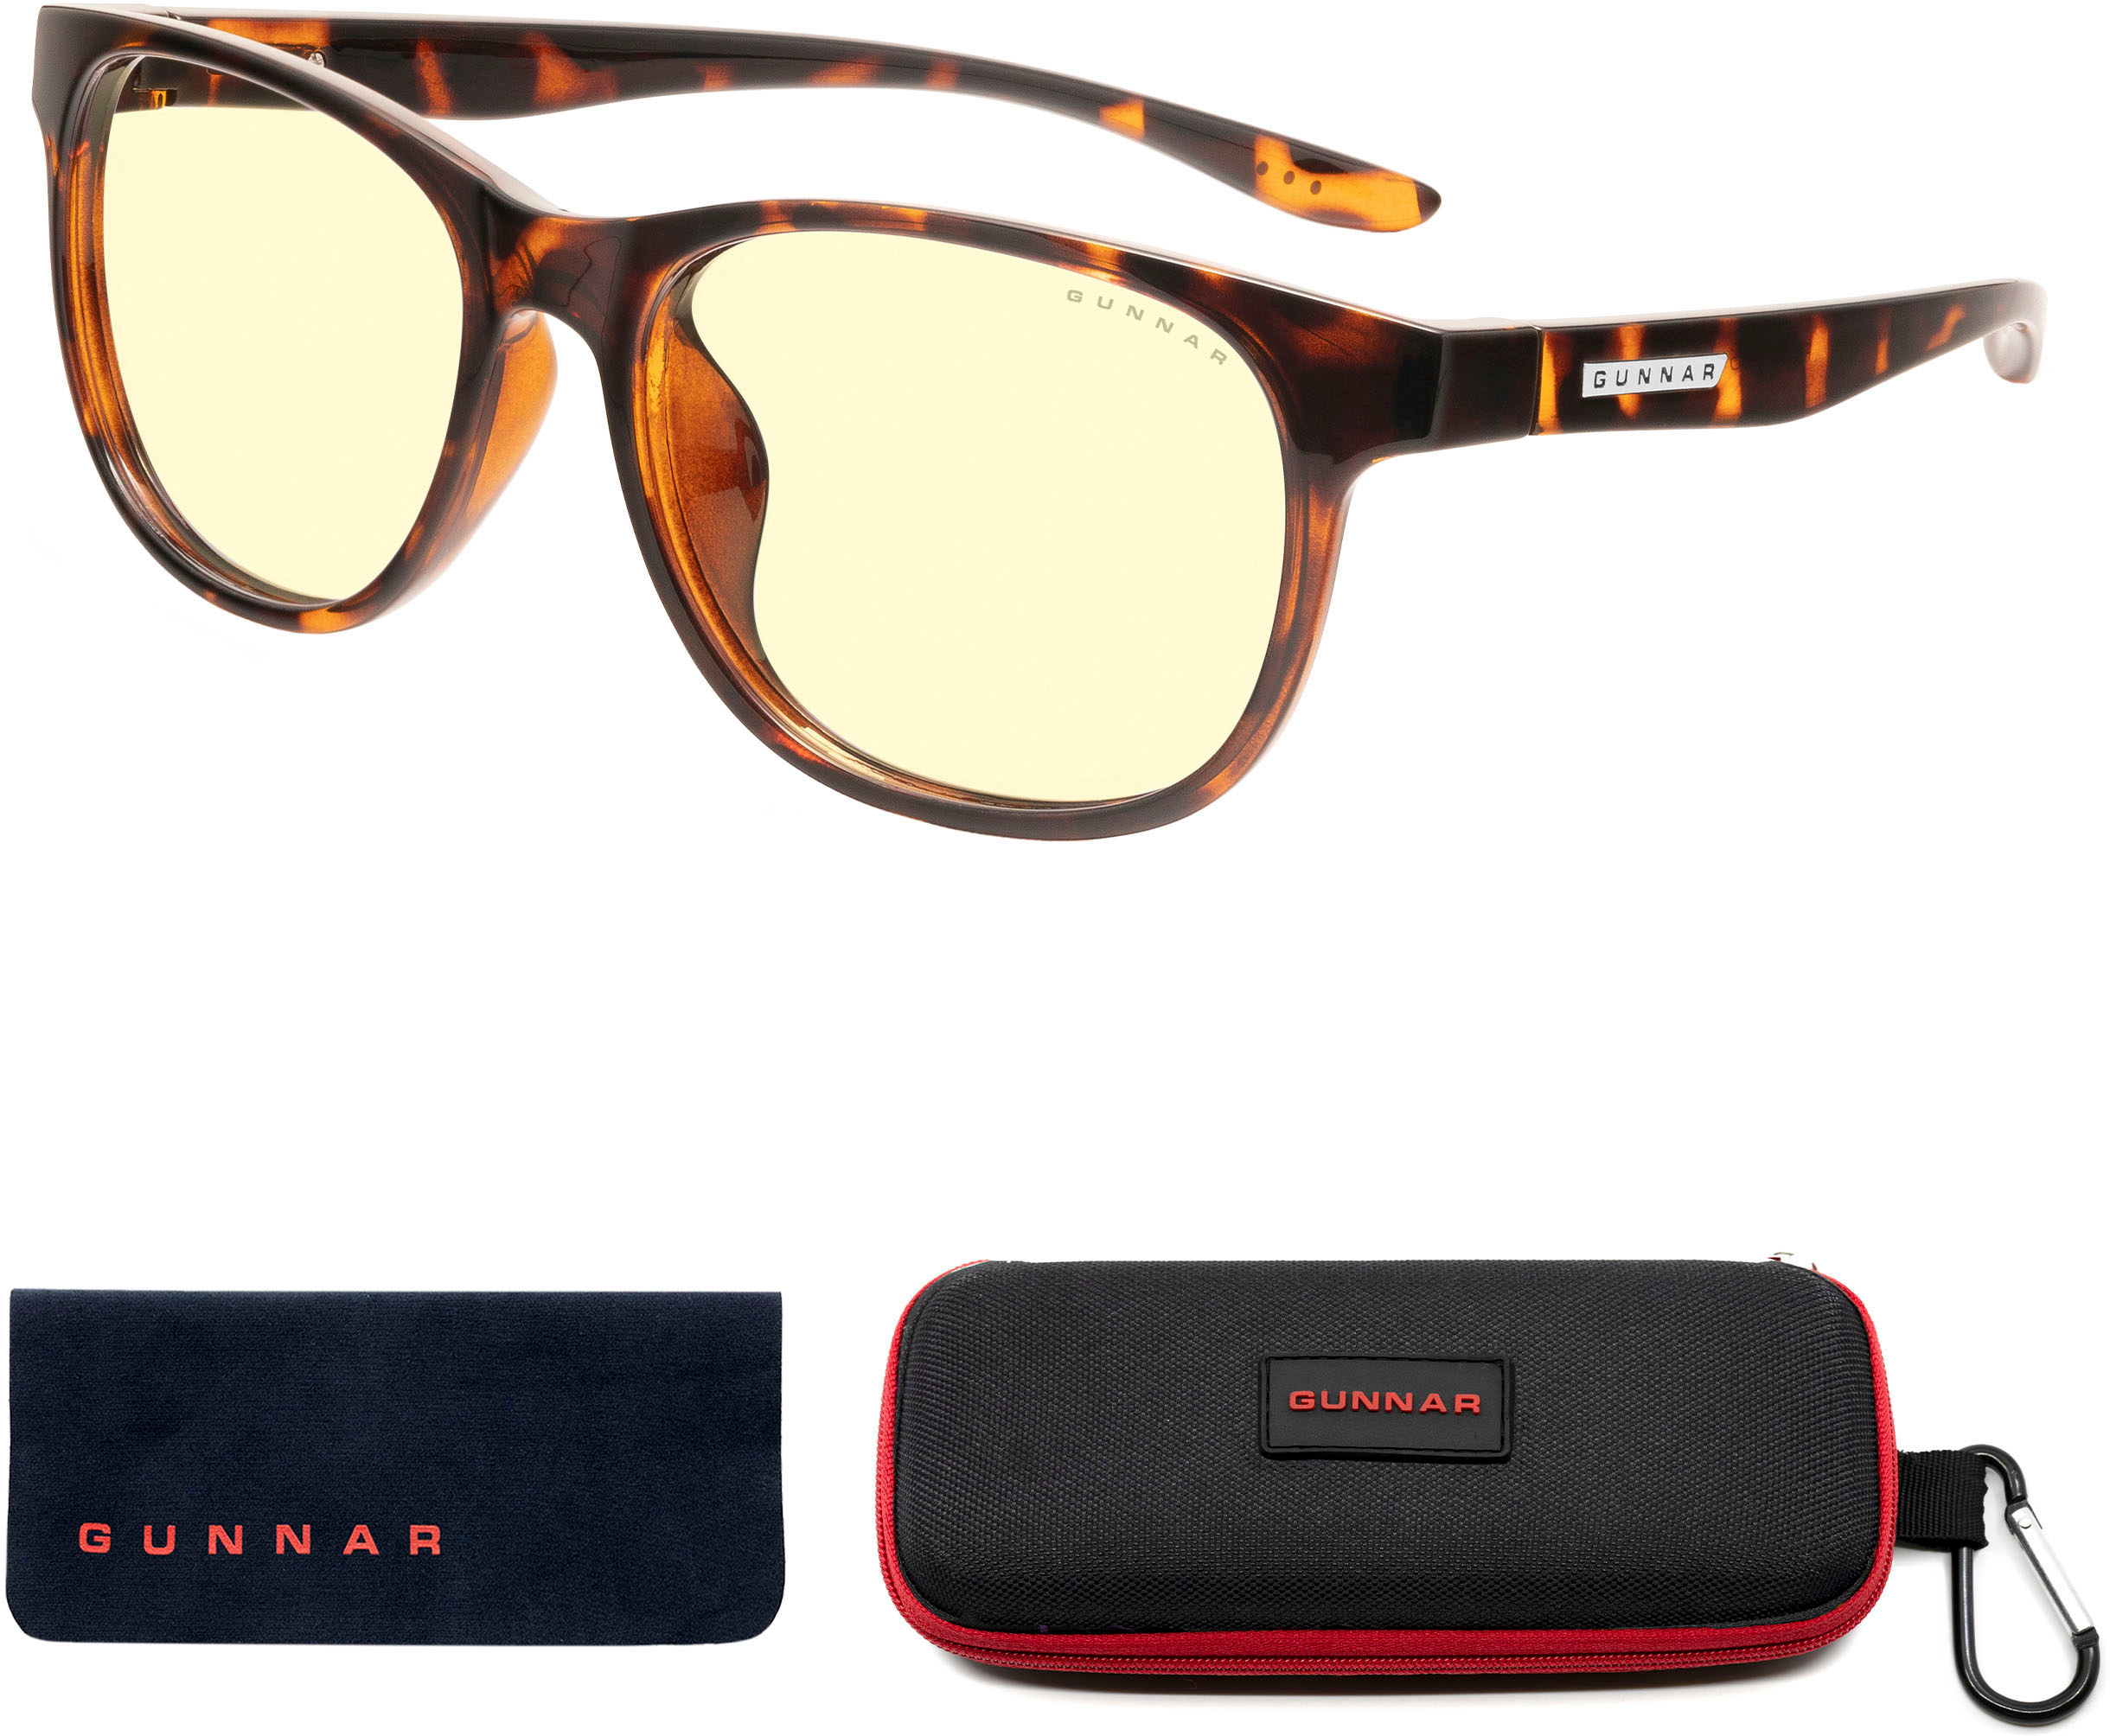  GUNNAR - Premium Gaming and Computer Glasses - Blocks